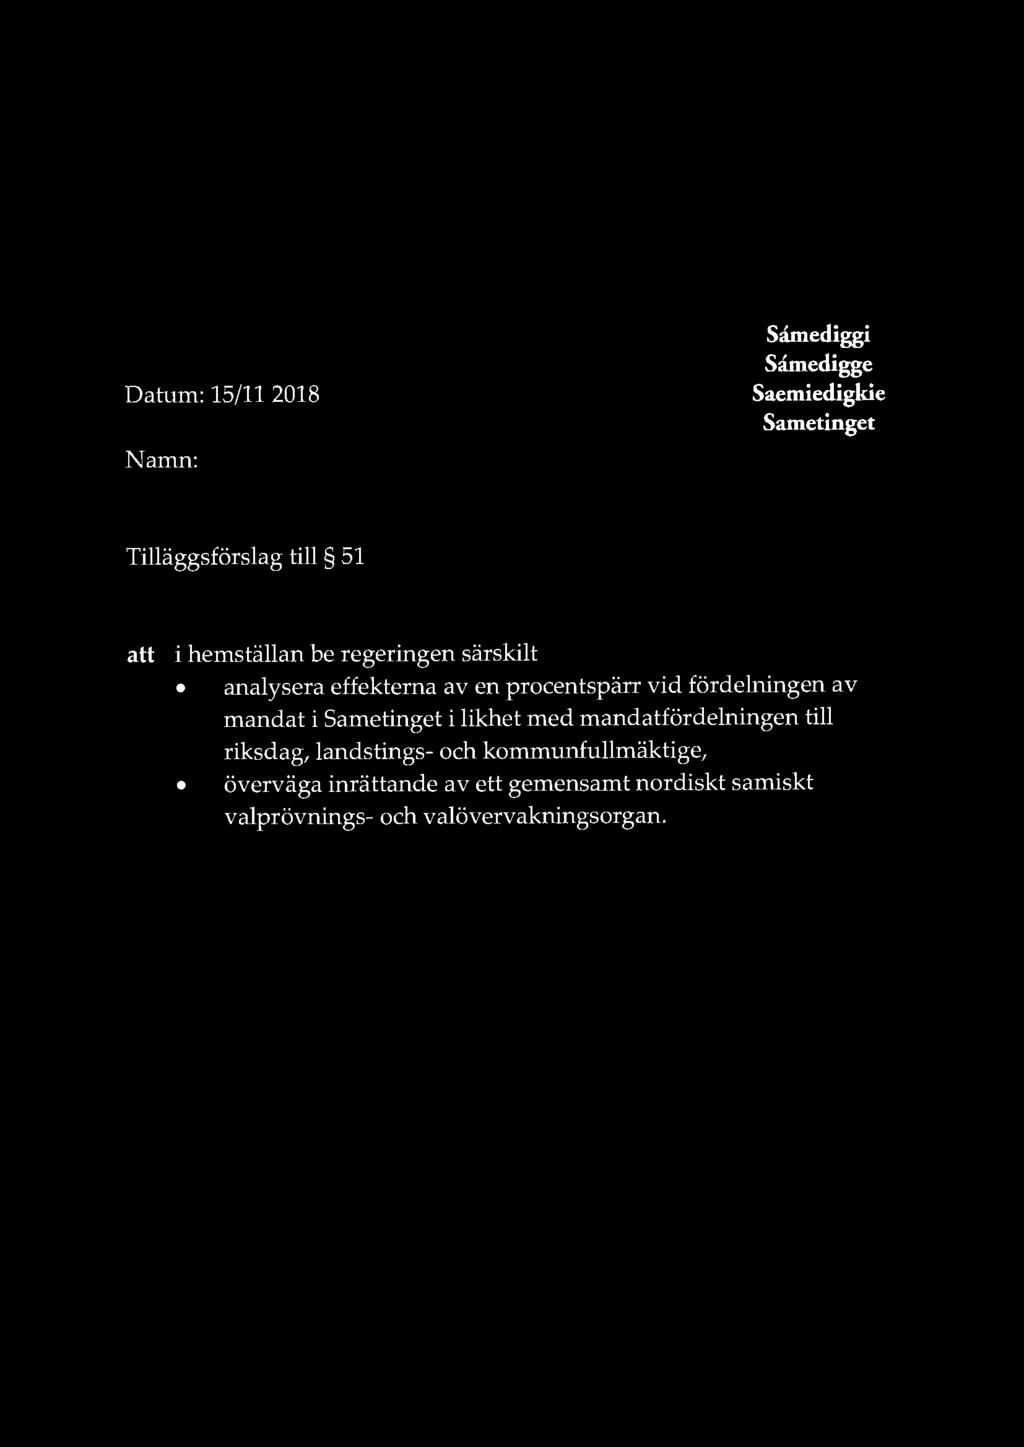 Datum: 15/11 2018 Namn: I t lft&)'iul-f Samediggi Samedigge Saemiedigkie Sametinget Tilläggsförslag